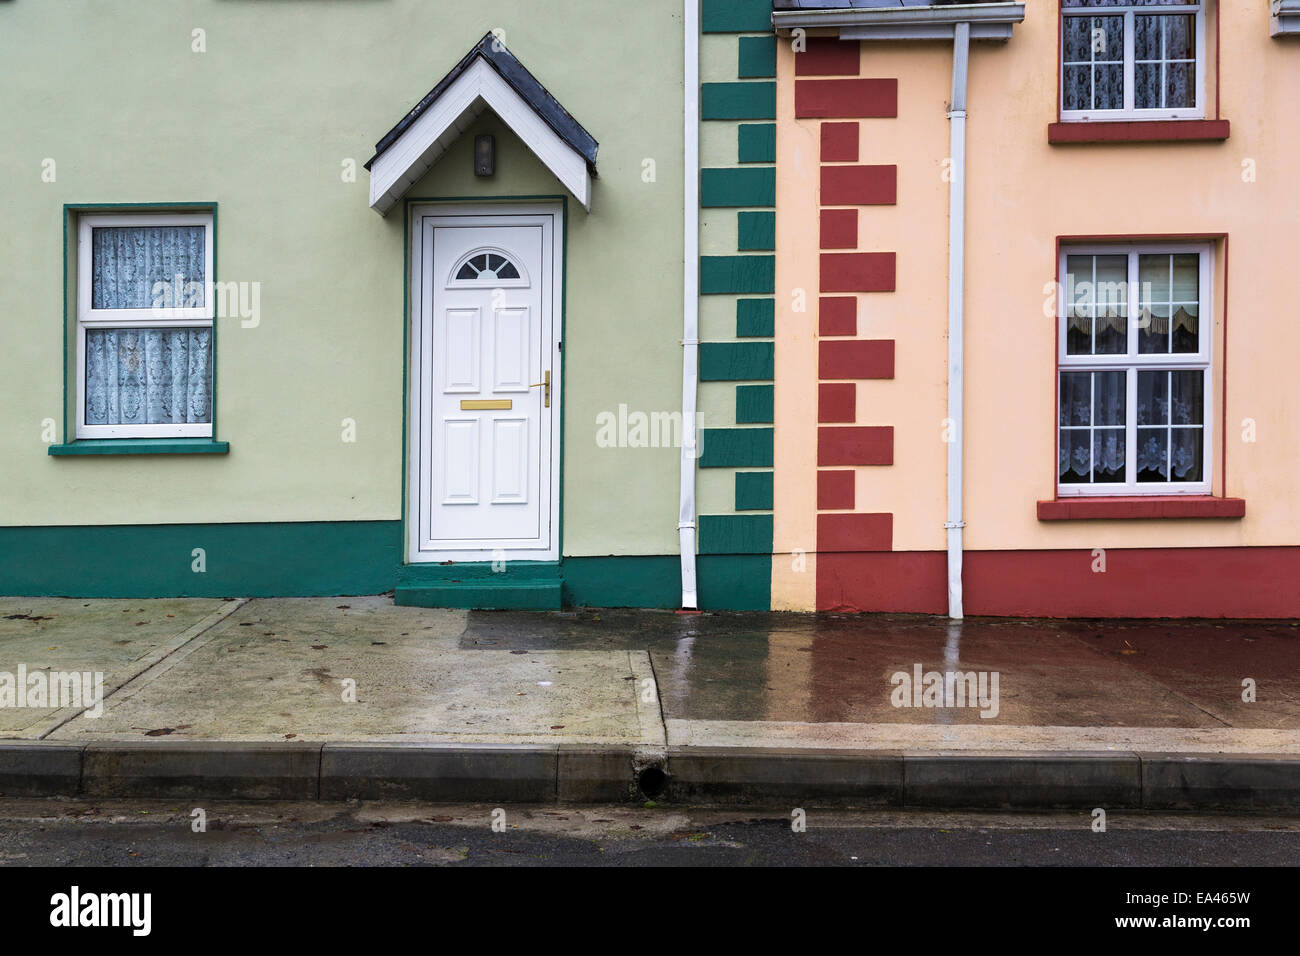 Des murs peints en vert et rouge des maisons en terrasse,Corofin, comté de Clare, Irlande Banque D'Images